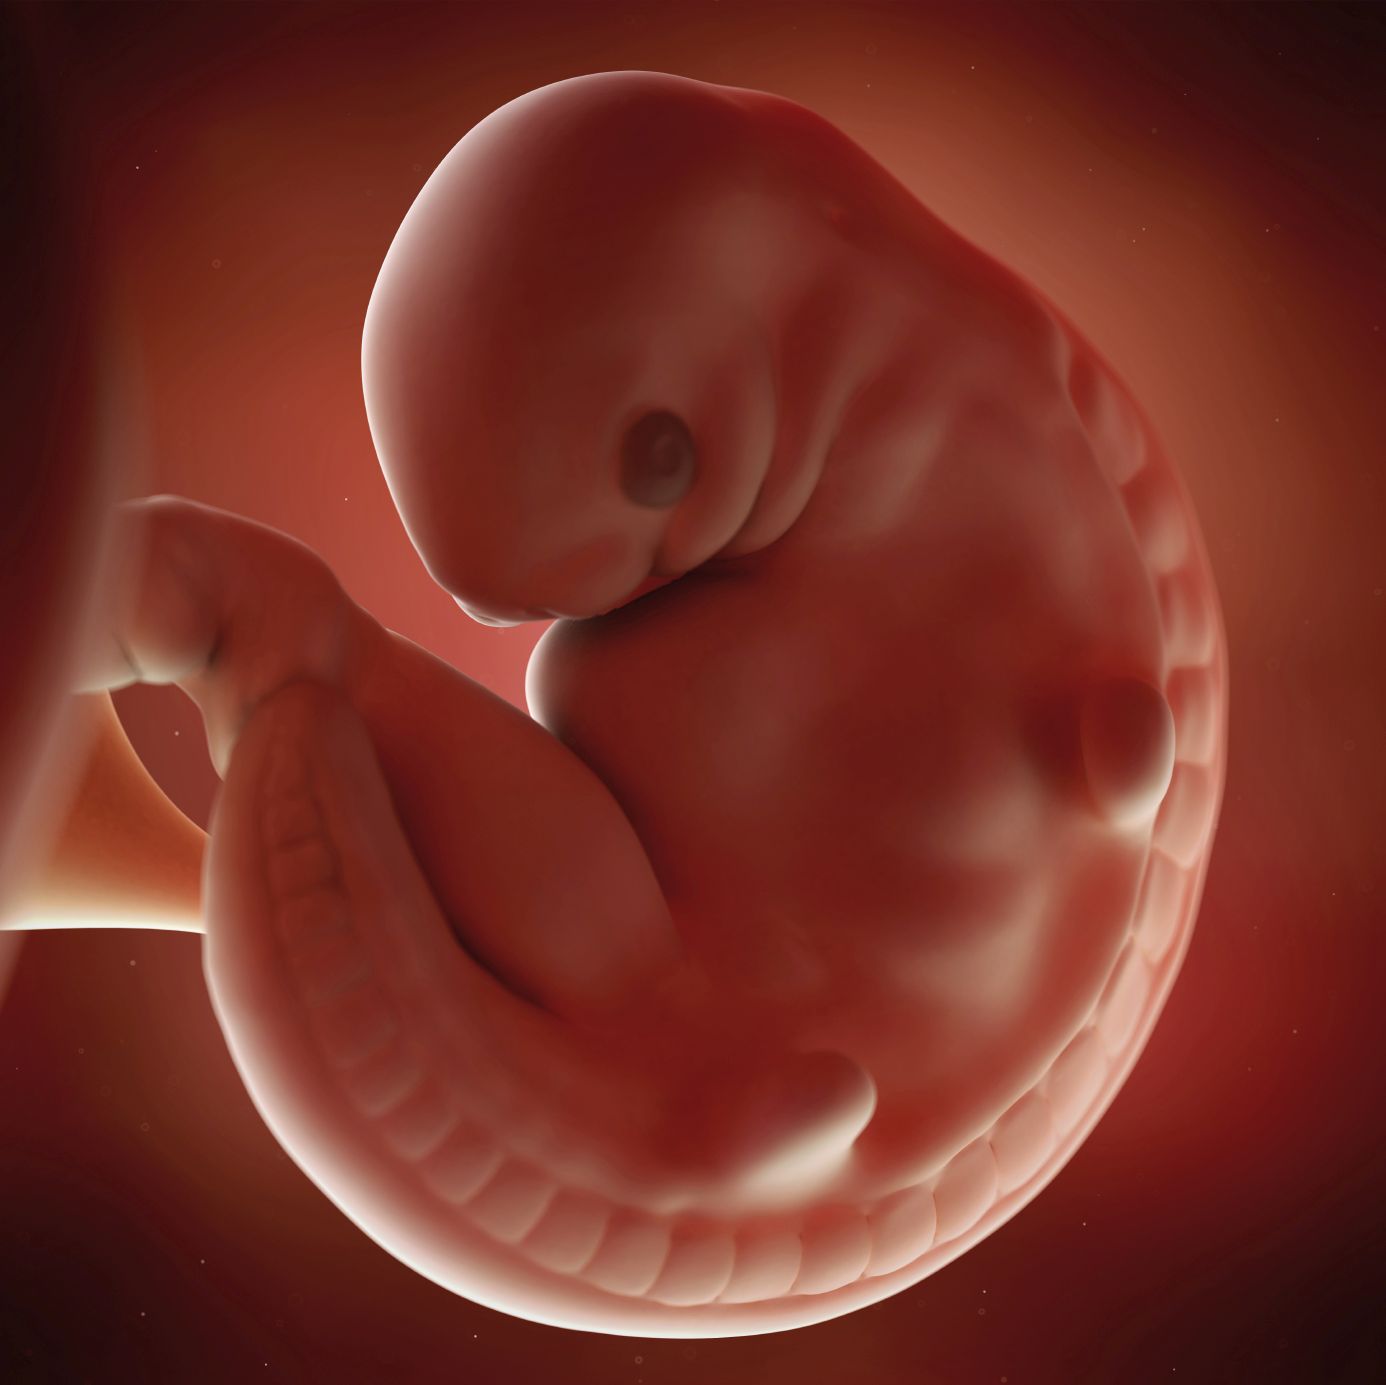 fetus 6 weeks